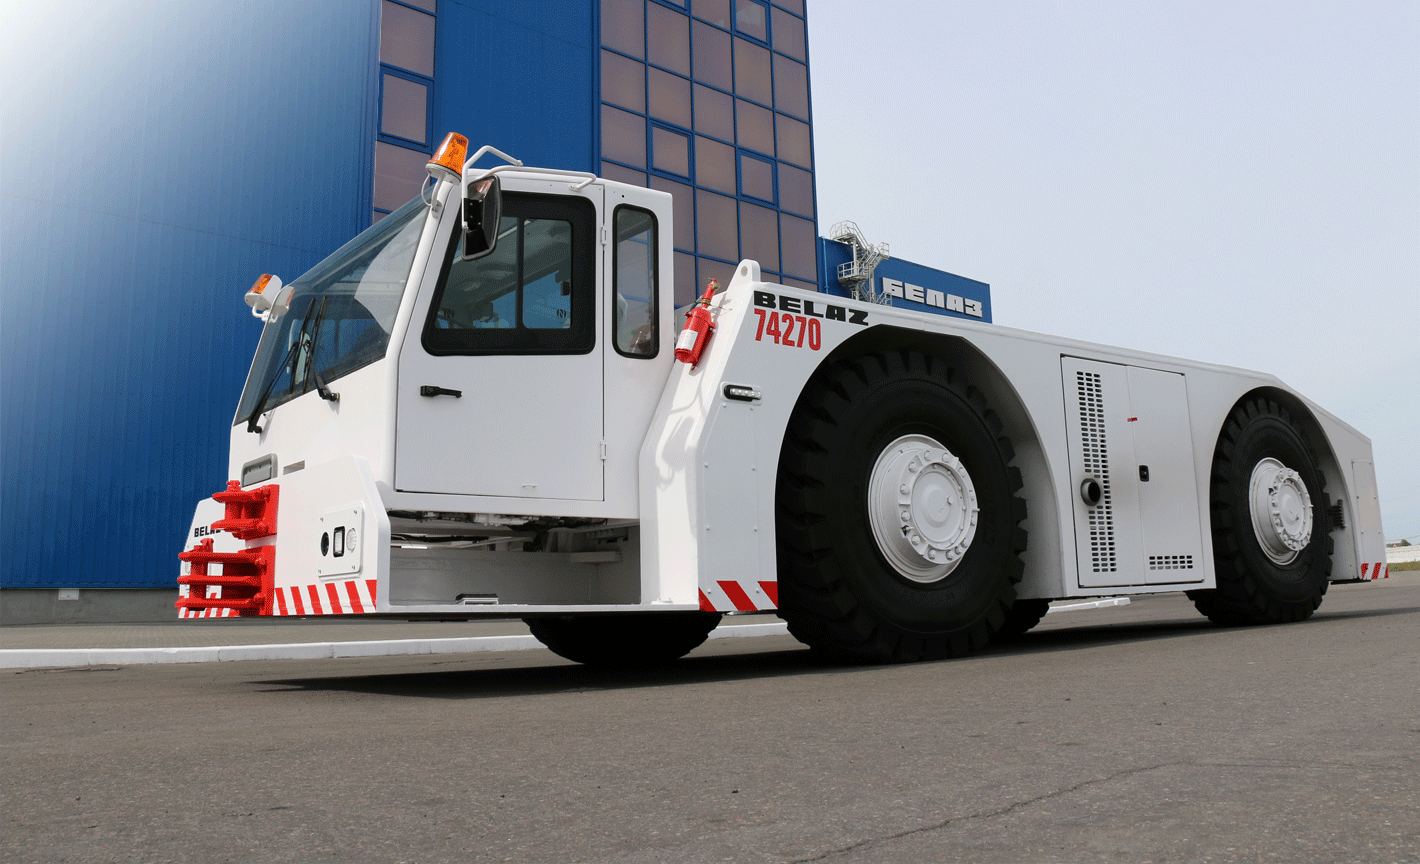 BELAZ-7427 towing vehicles